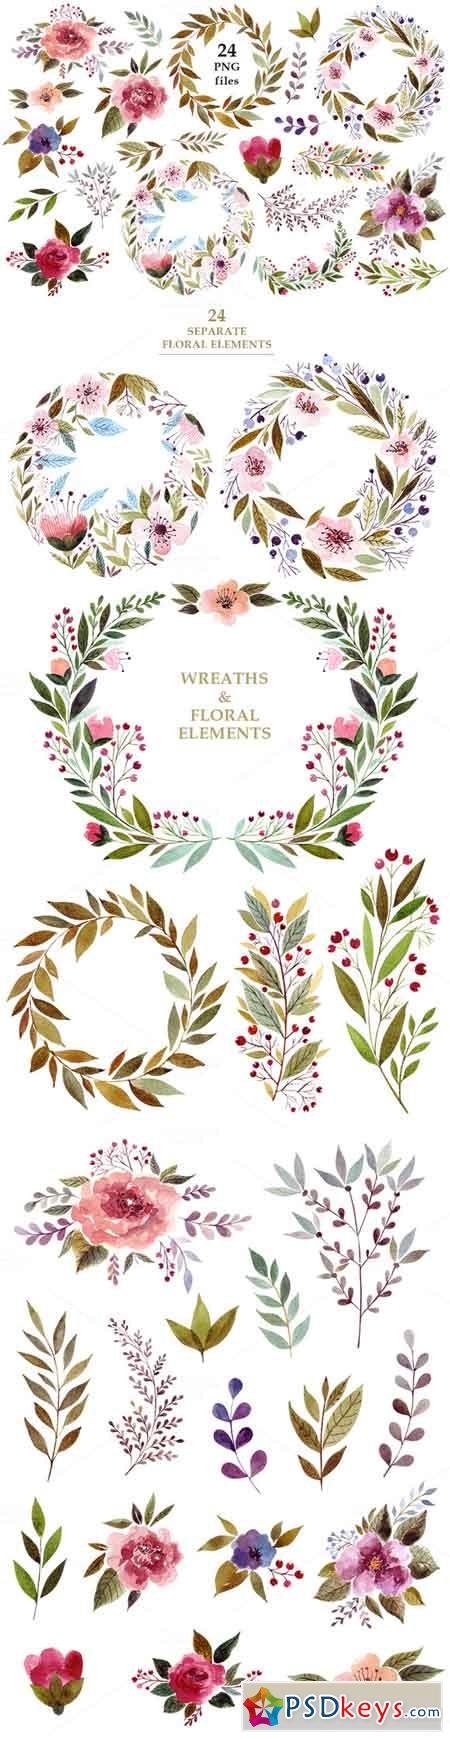 Watercolor flowers & wreaths 681069